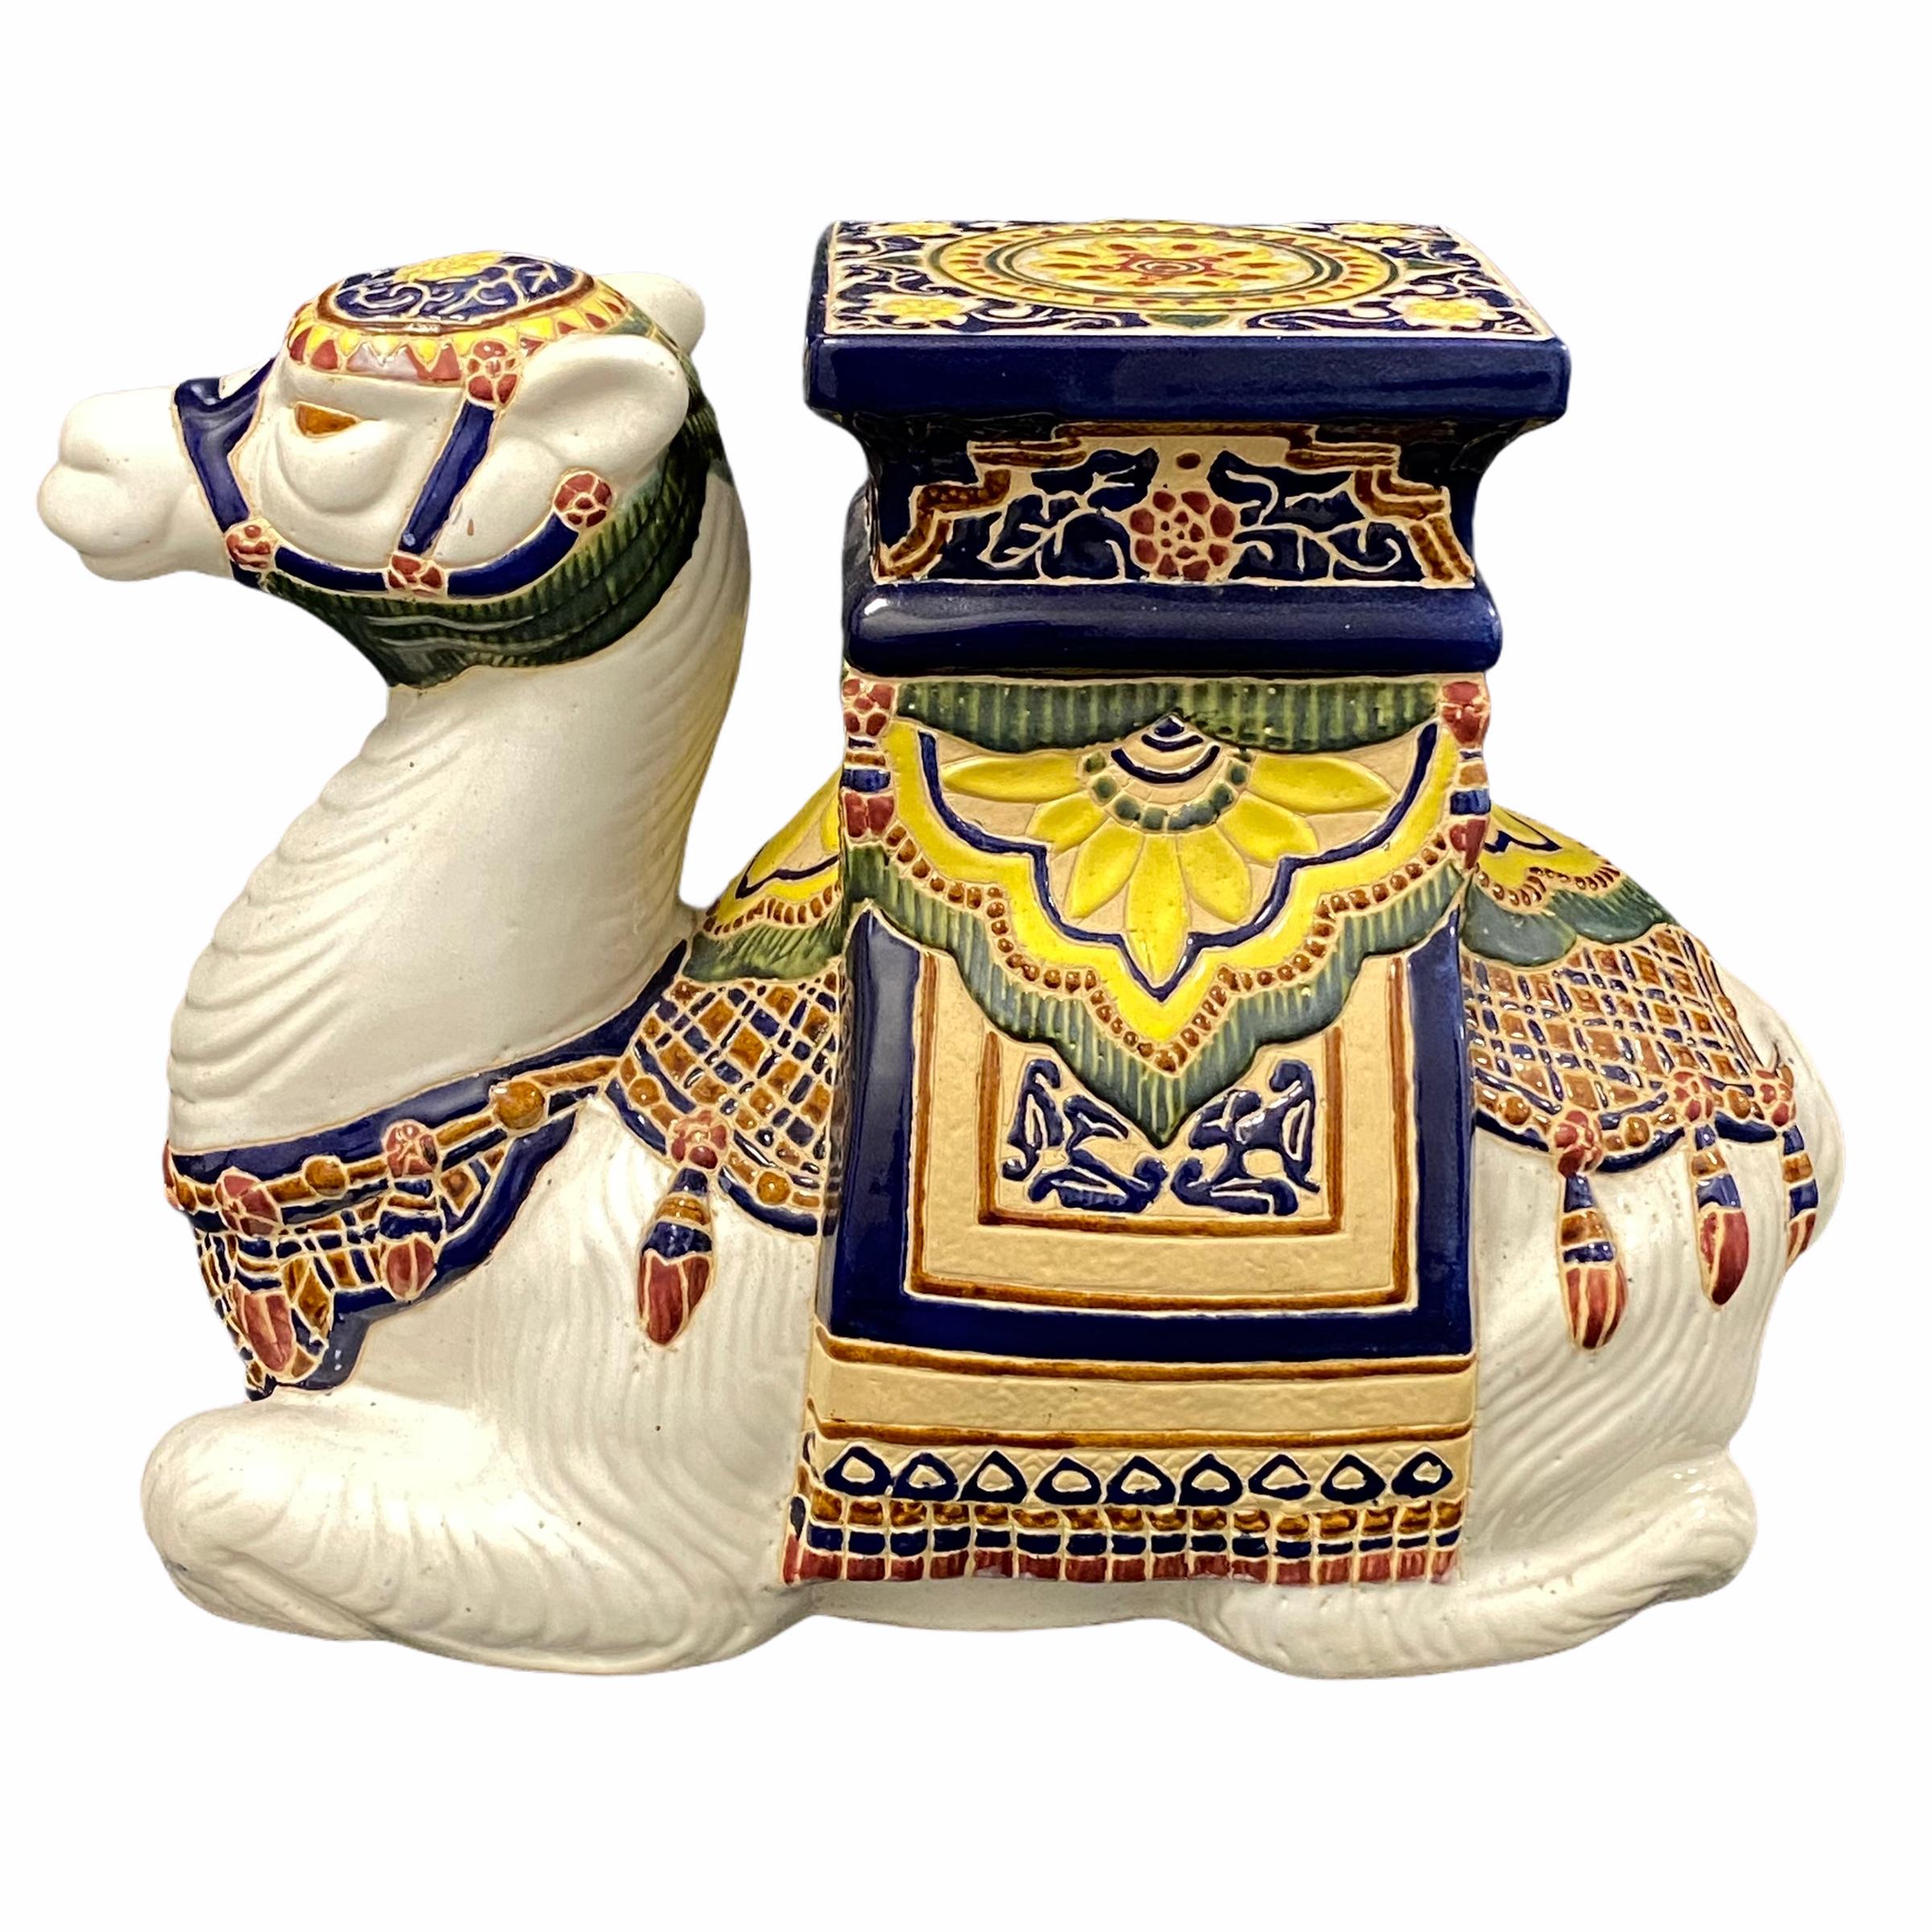 Mitte des 20. Jahrhunderts glasierter Kamel-Gartenhocker aus Keramik, Blumentopfsitz oder Beistelltisch. Handgefertigte Keramik. Eine schöne Ergänzung für Ihr Haus, Ihre Terrasse oder Ihren Garten.
  